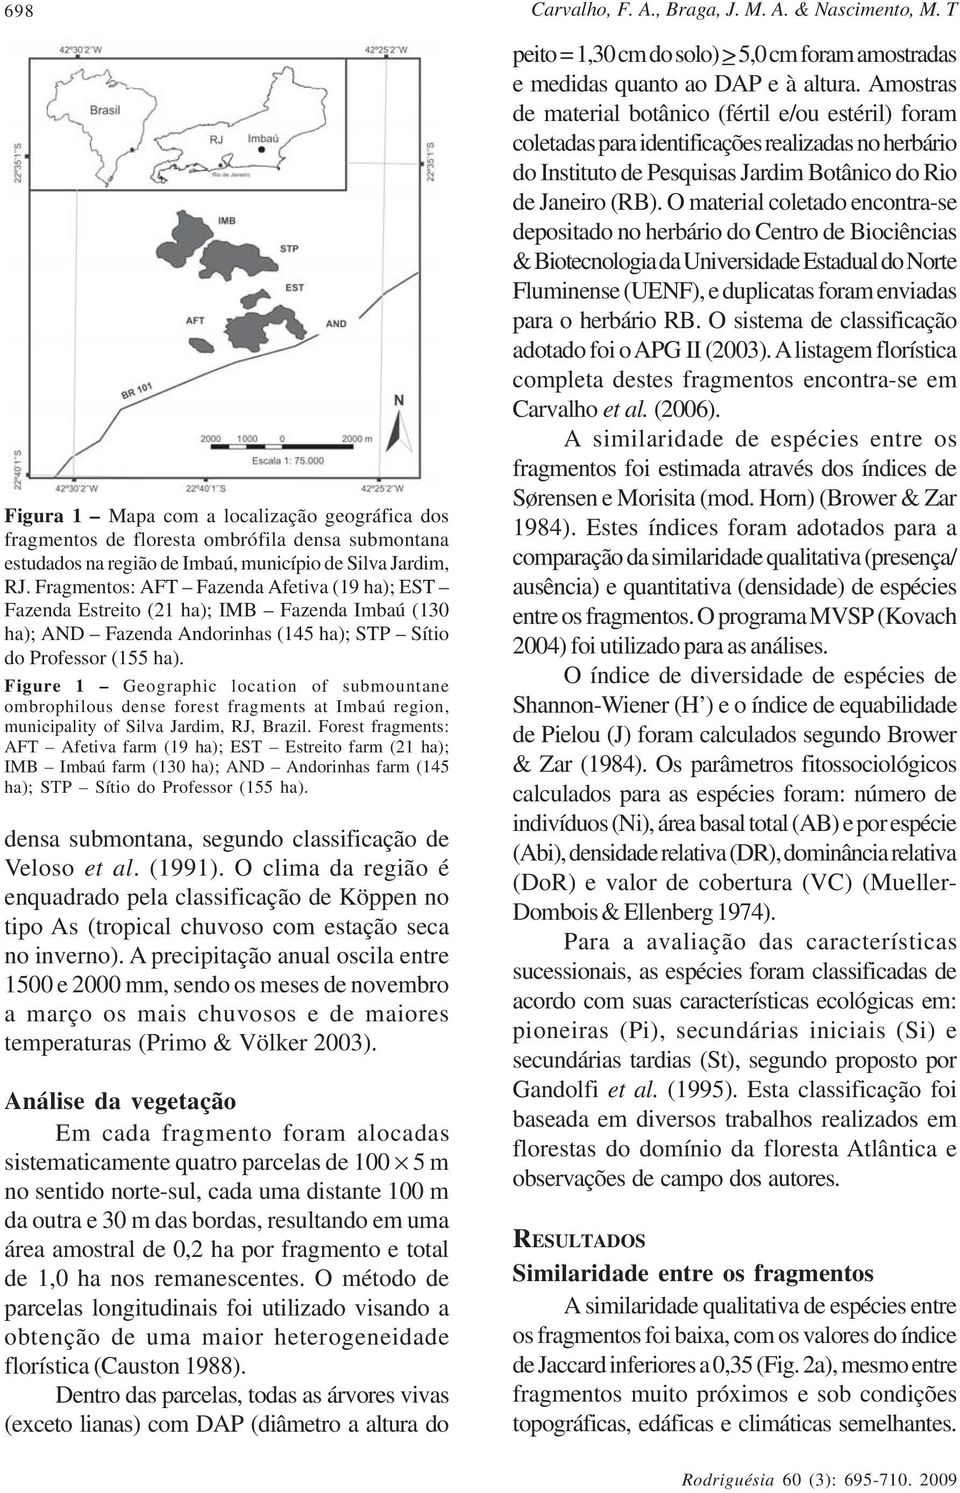 Fragmentos: AFT Fazenda Afetiva (19 ha); EST Fazenda Estreito (21 ha); IMB Fazenda Imbaú (130 ha); AND Fazenda Andorinhas (145 ha); STP Sítio do Professor (155 ha).